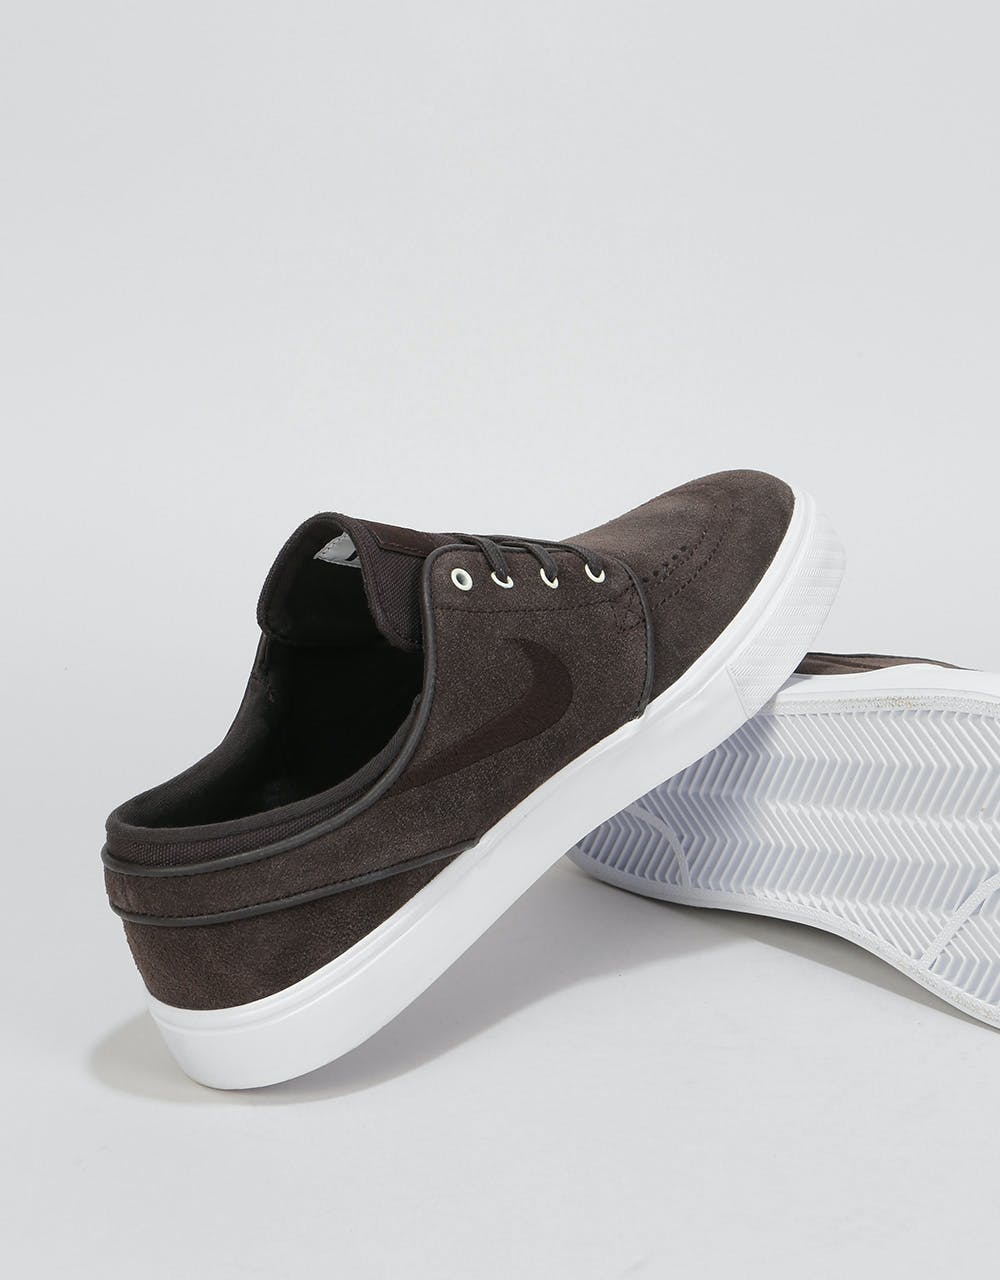 Nike SB Zoom Stefan Janoski Skate Shoes - Velvet Brown/White